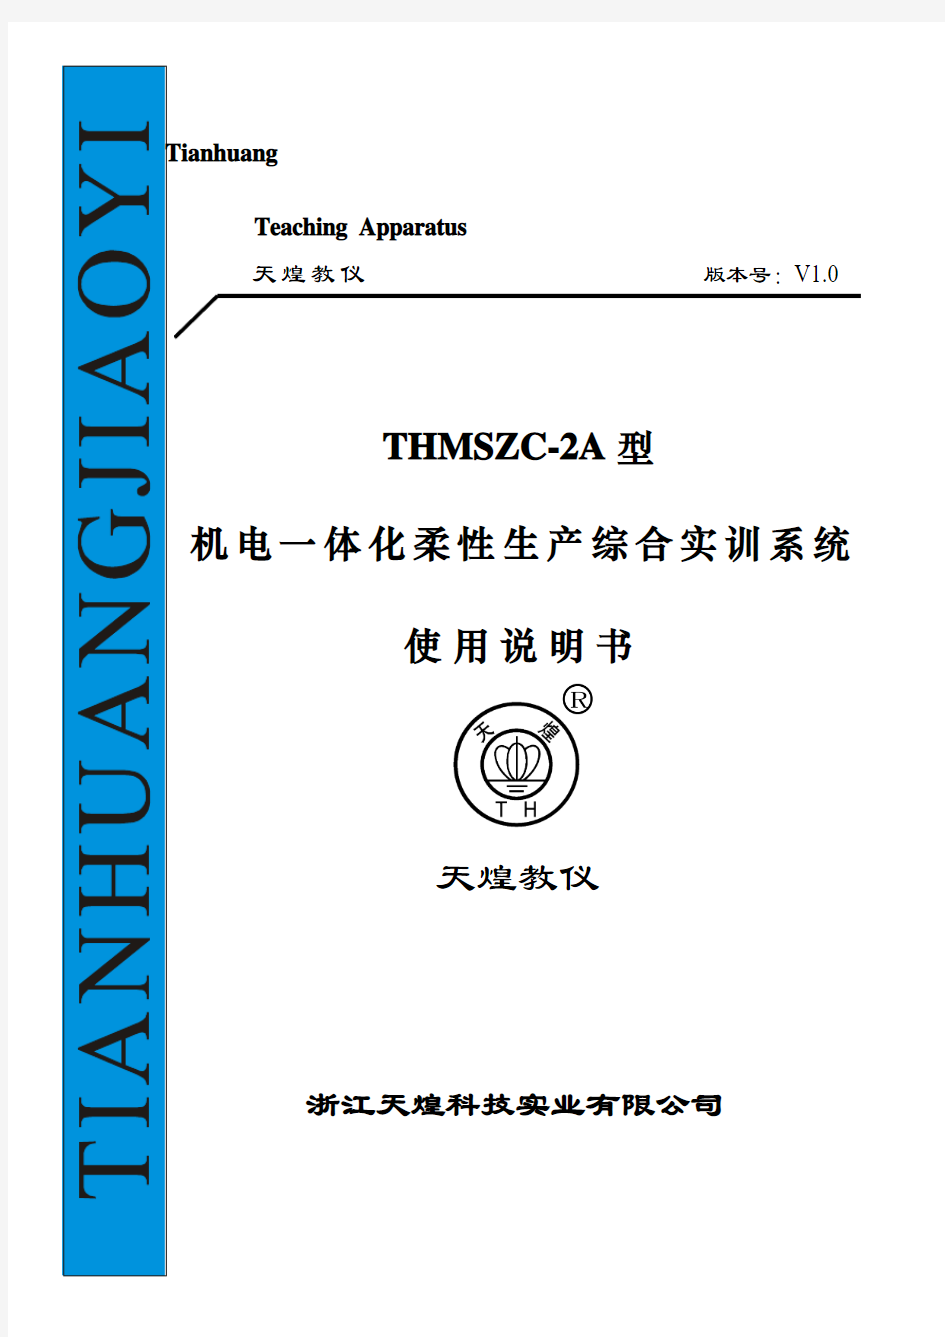 THMSZC-2A型 使用说明书(8米)